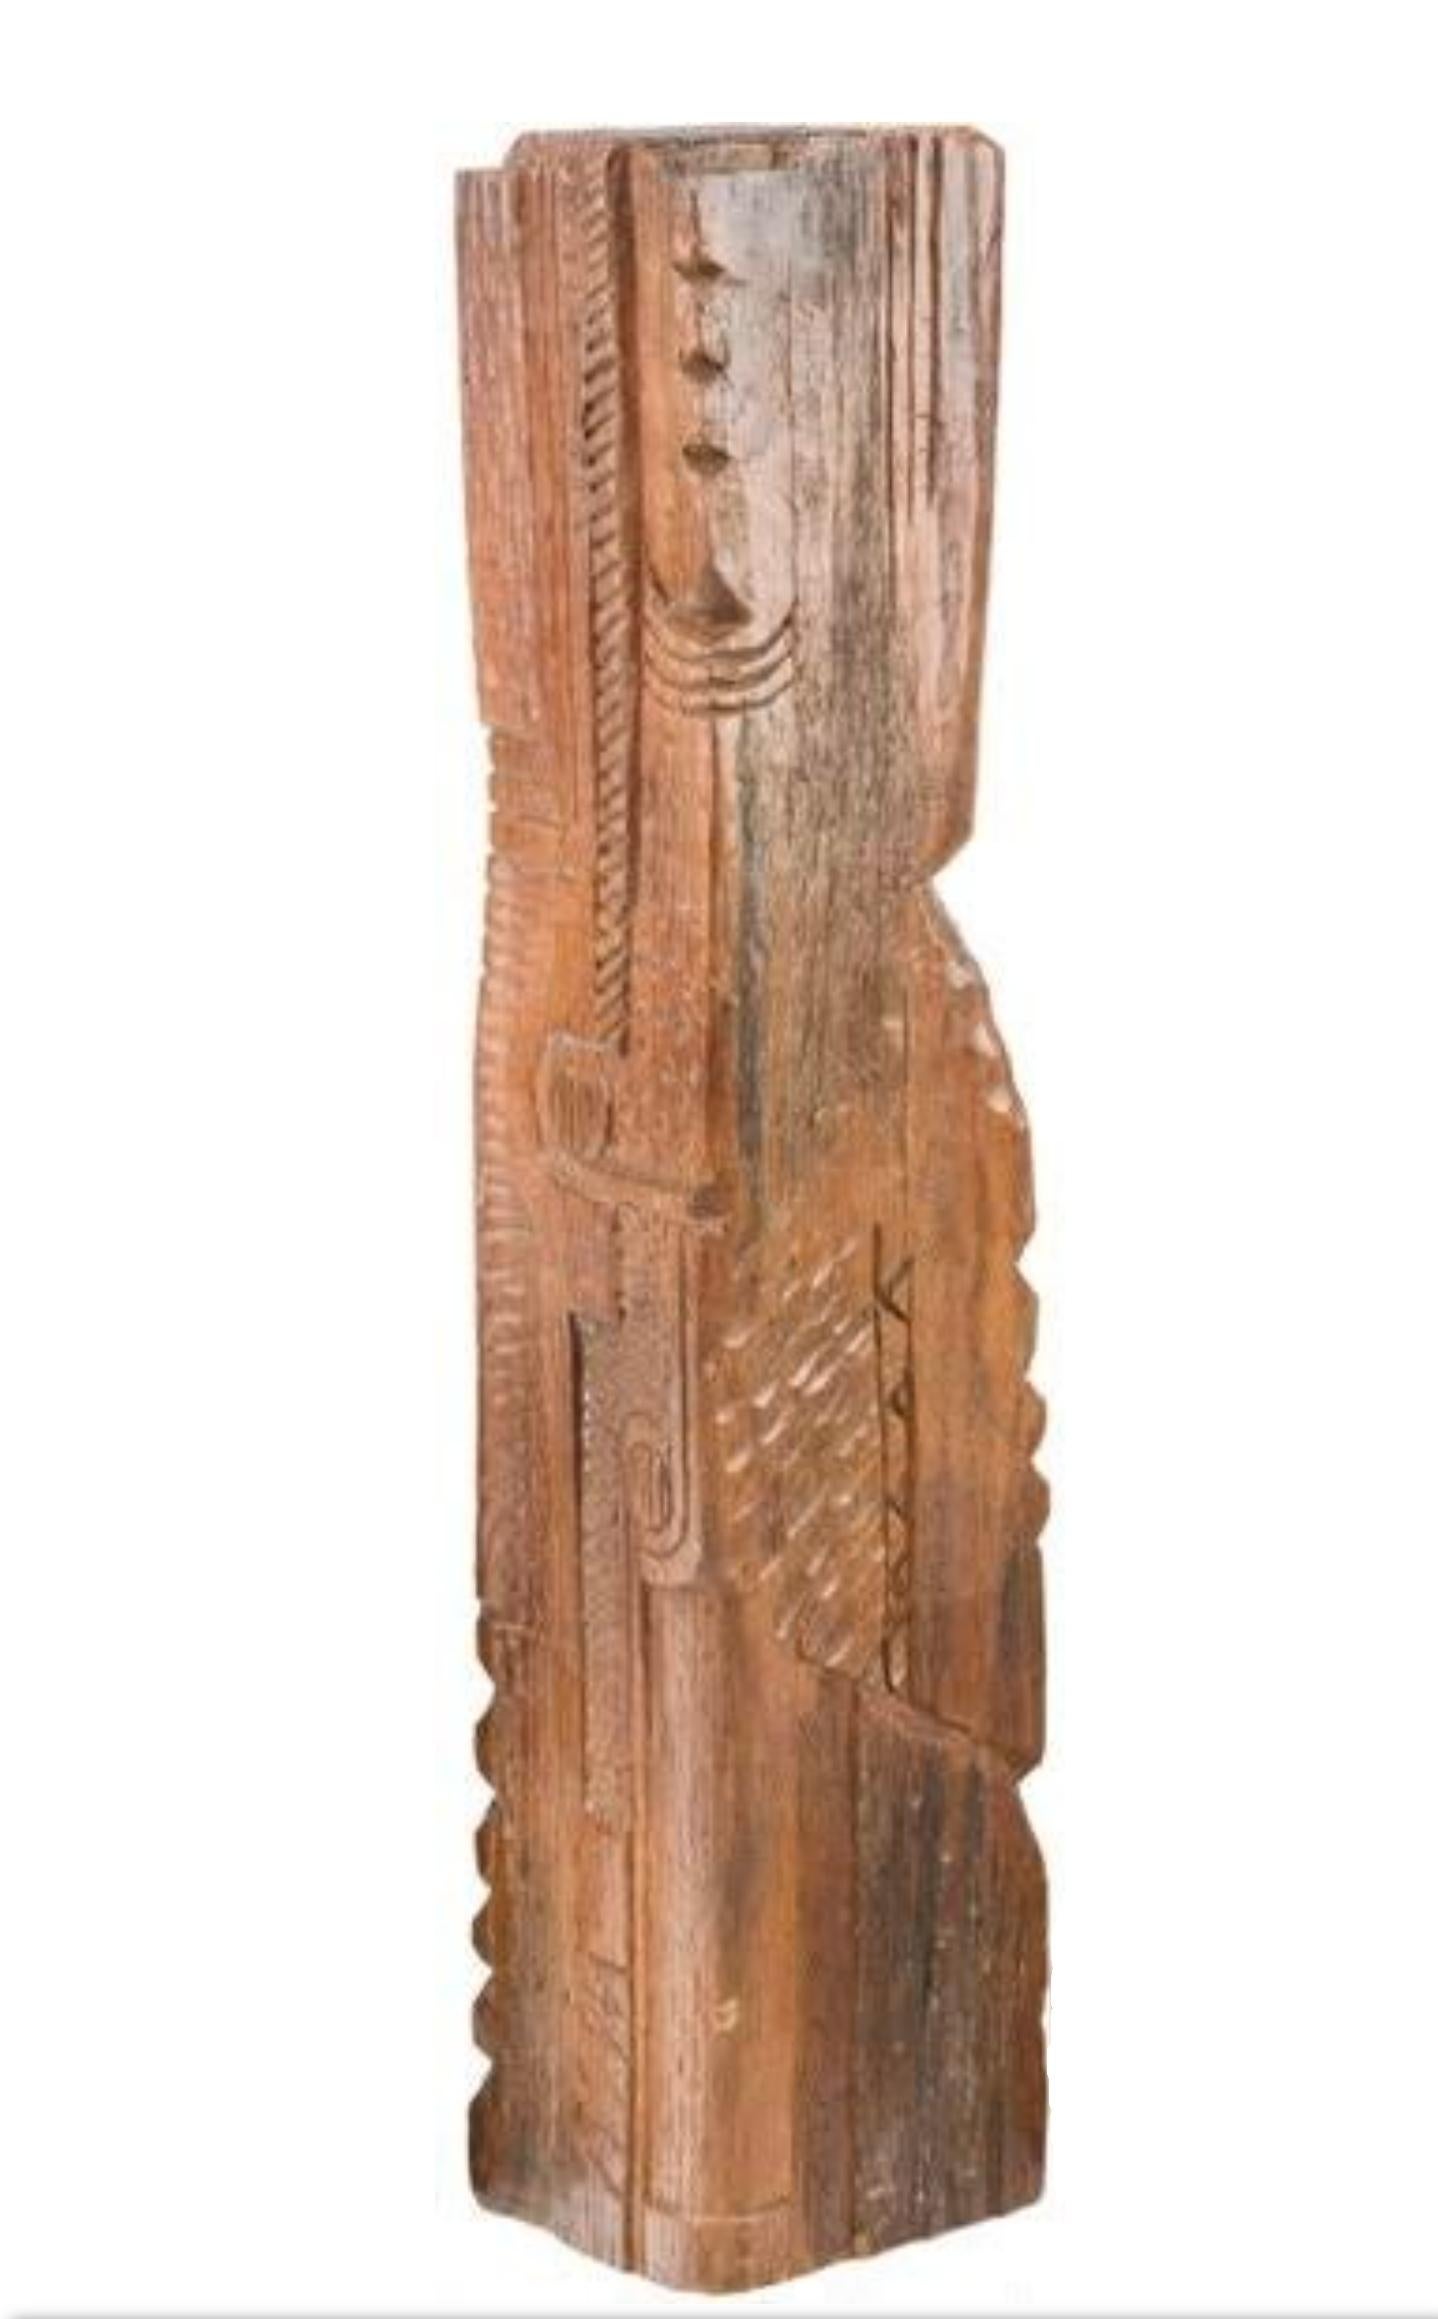 José De Creeft (1884-1982) Weibliches Totem Holzschnitzerei Skulptur 

Provenienz / Erwerb:
Eigentum aus der bedeutenden Sammlung des verstorbenen Robert Gingold (1944-2017)

Das renommierte Auktionshaus Heritage Auctions, Dallas, Texas, hatte das